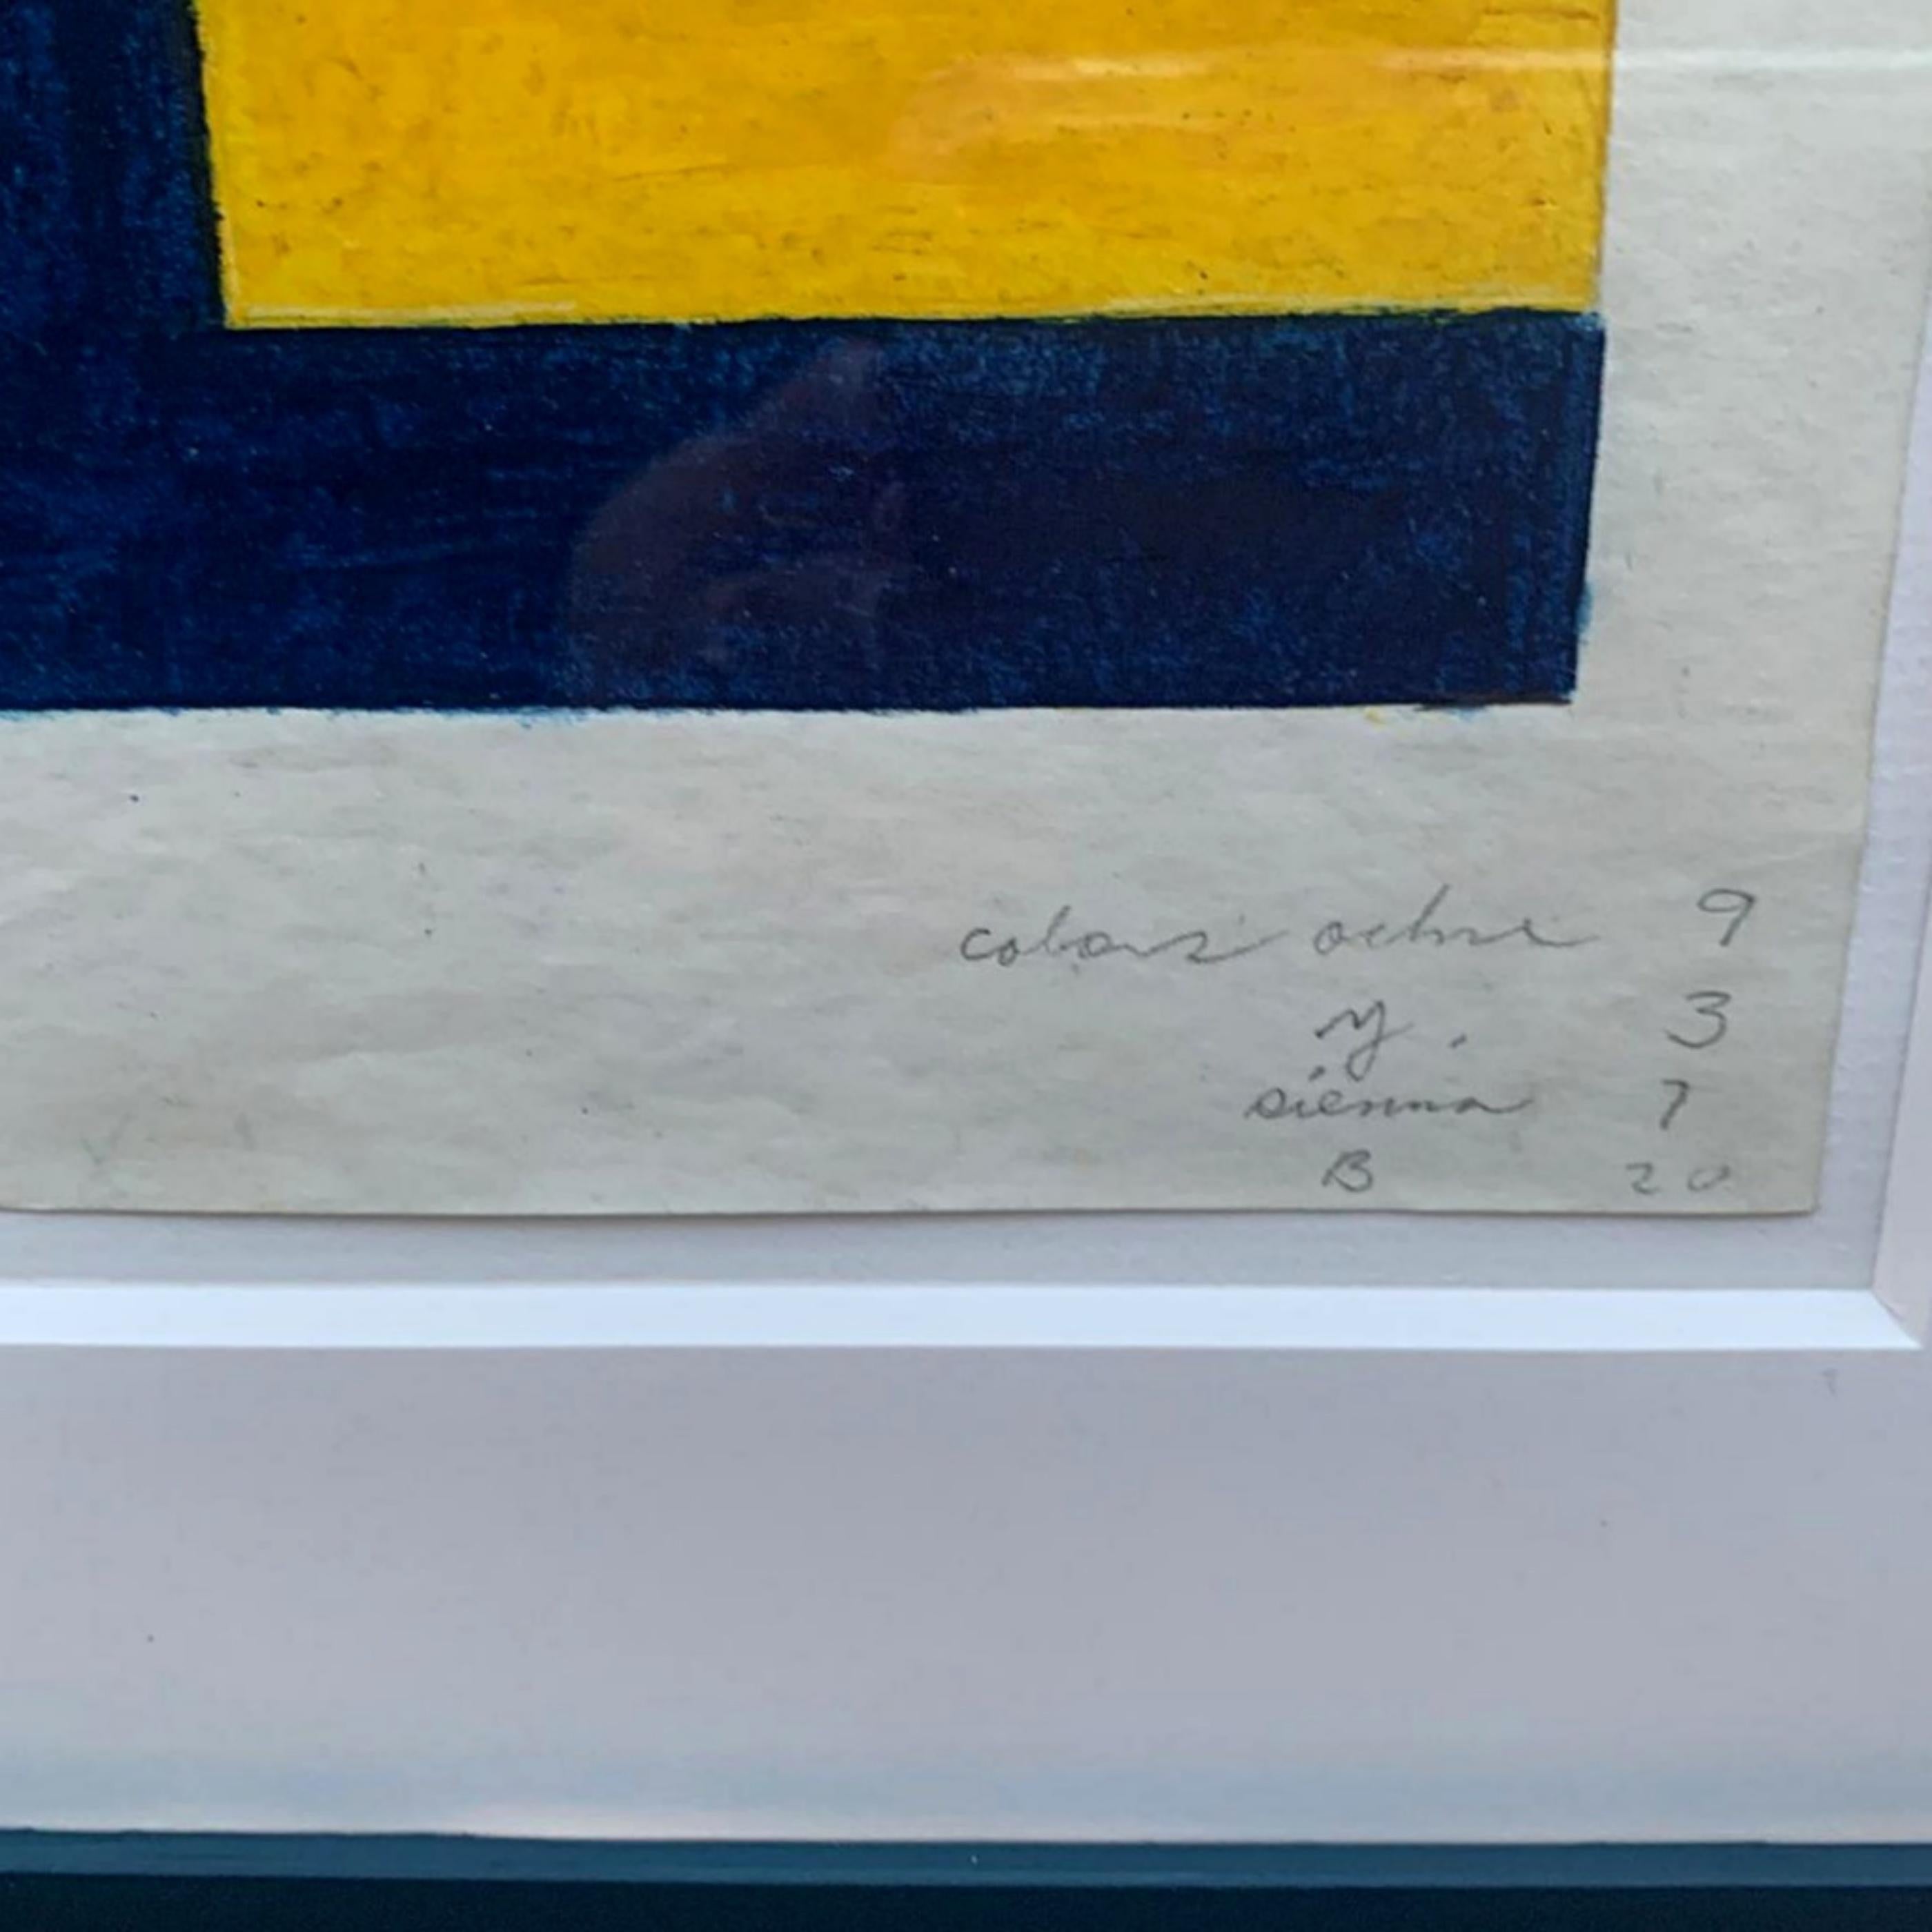 HOWARD MEHRING
Studie für Spring Sweep, 1964
Öl, Ölstift, Kohle, Gouache auf Papier
Handsigniert, datiert und mit den Namen der Farben in Graphitstift auf der Vorderseite vermerkt
Dies ist ein einzigartiges Werk
Inklusive Rahmen: elegant paspeliert